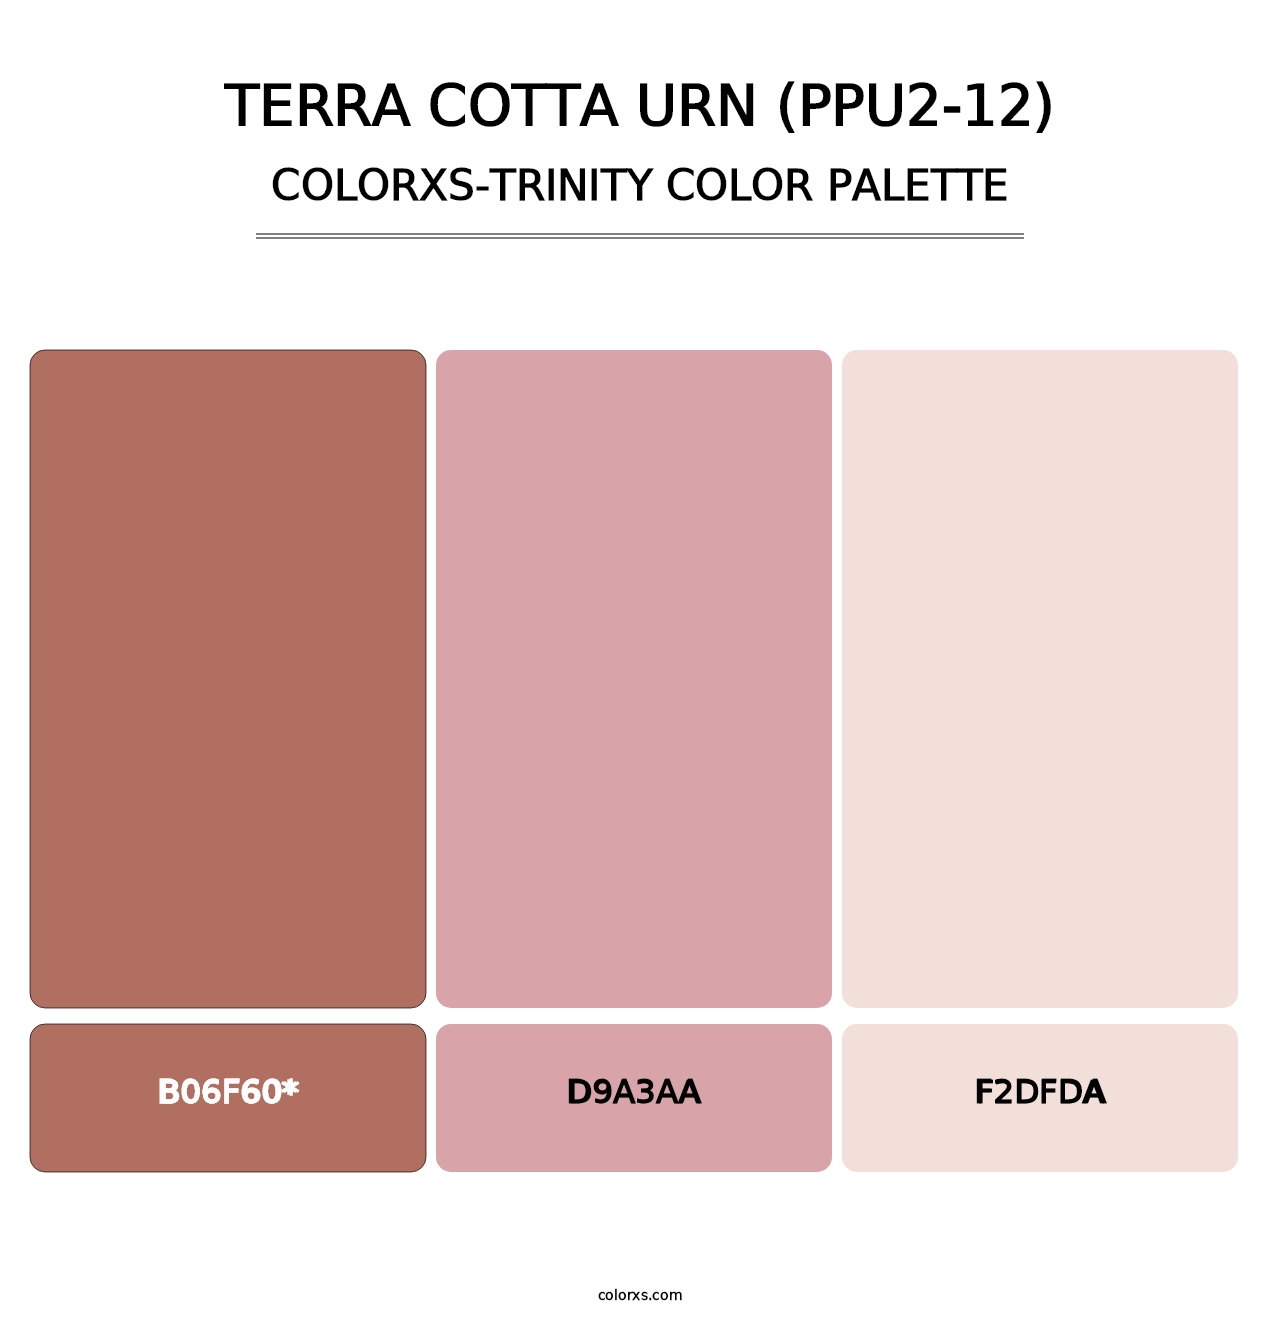 Terra Cotta Urn (PPU2-12) - Colorxs Trinity Palette